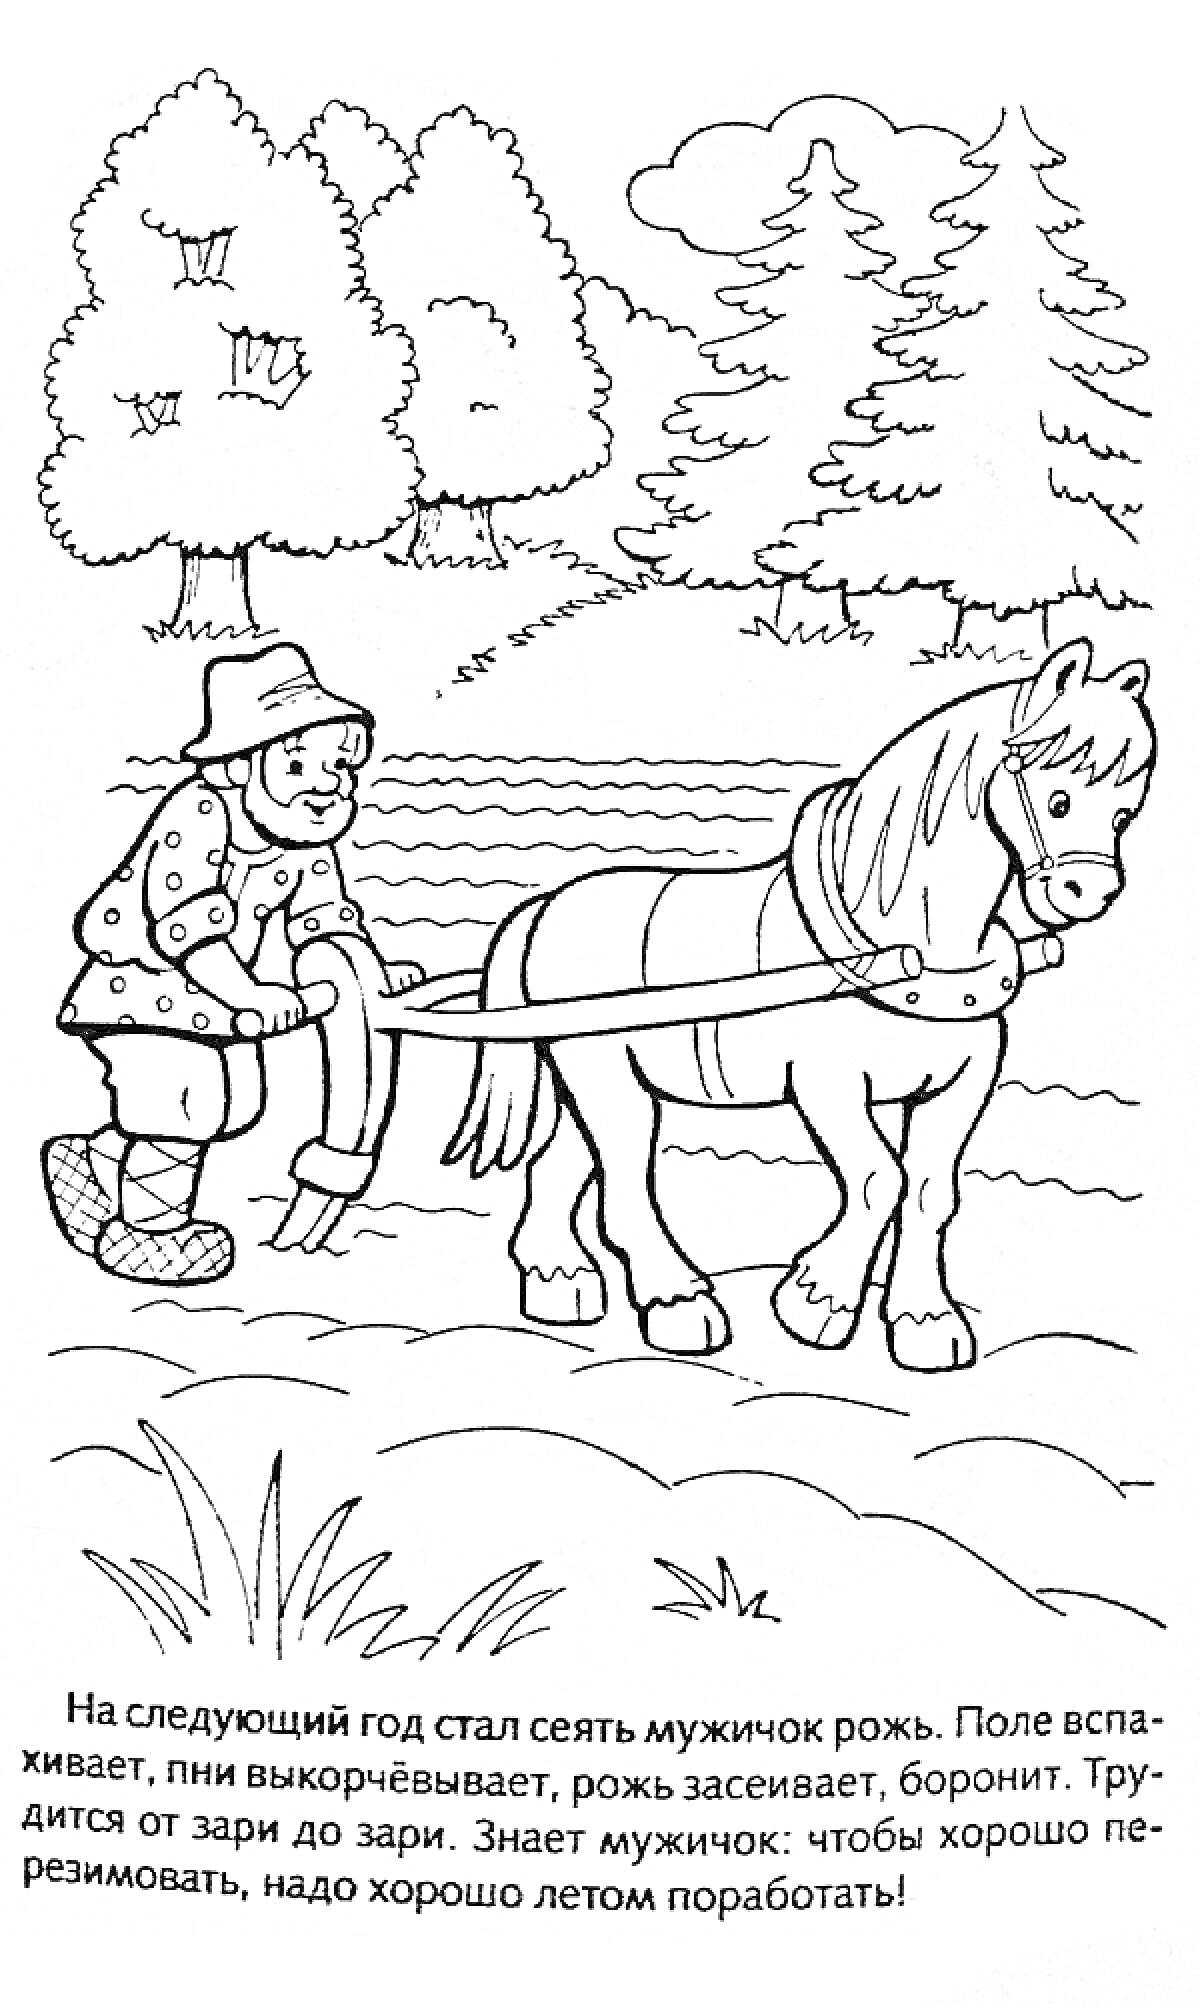 Мужик пашет поле с лошадью, лес и трава на фоне, текст 